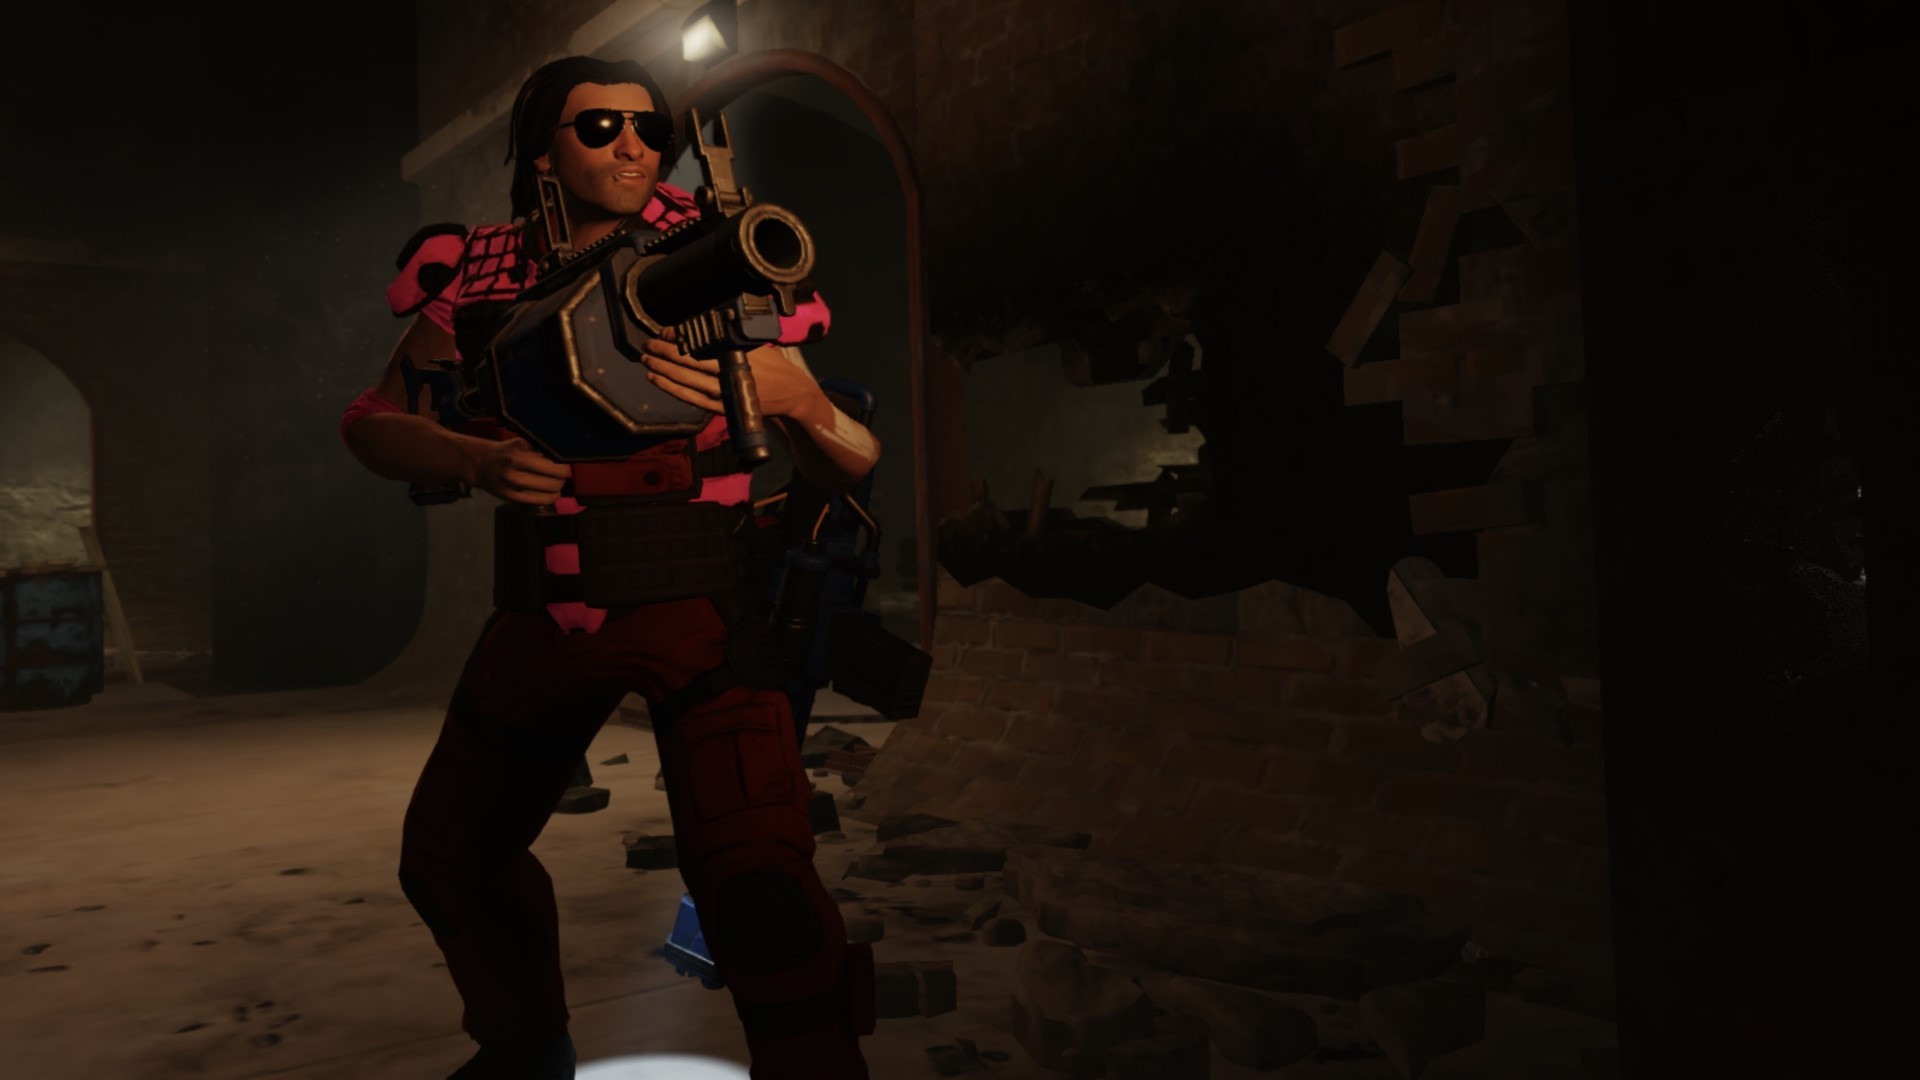 Trò chơi chiến lược di động tốt nhất: Bộ sưu tập XCOM 2. Hình ảnh cho thấy một người đàn ông với một khẩu súng lớn đang đứng trong một hành lang bằng đá